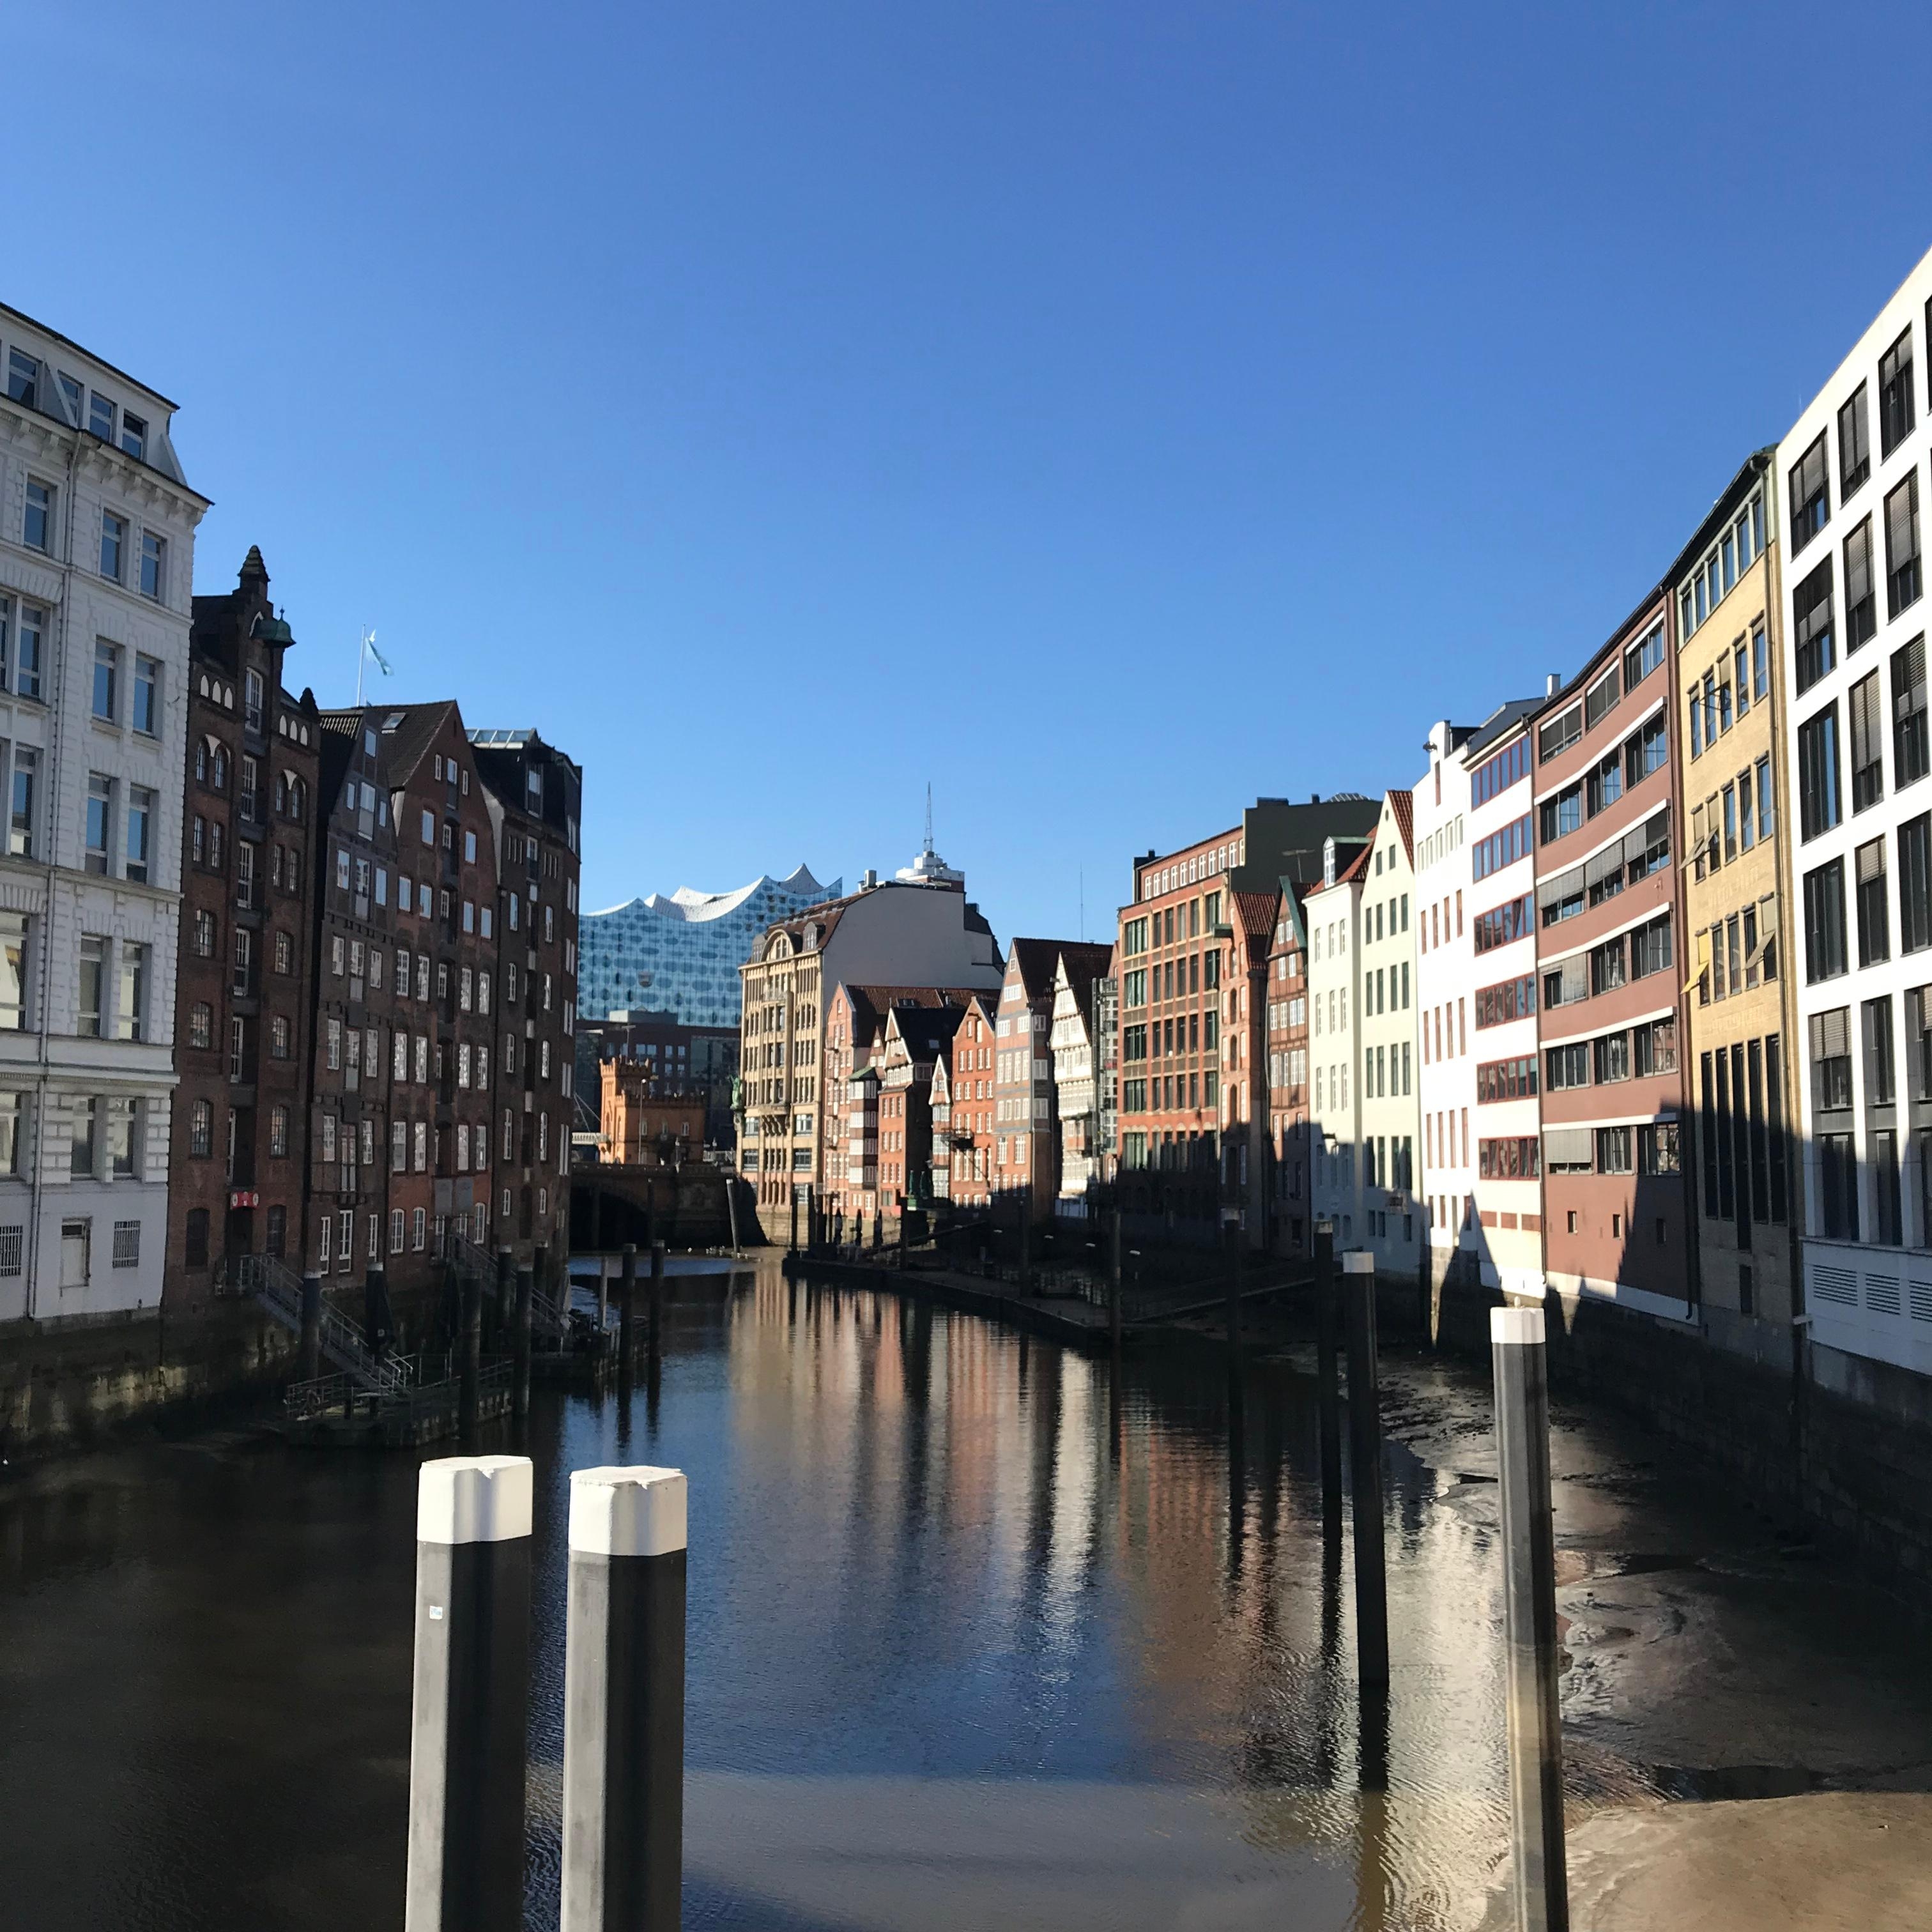 Hamburg ist einfach wunderschön 😍#hamburg #hh #elbphilharmonie #travel #reise #wochenende